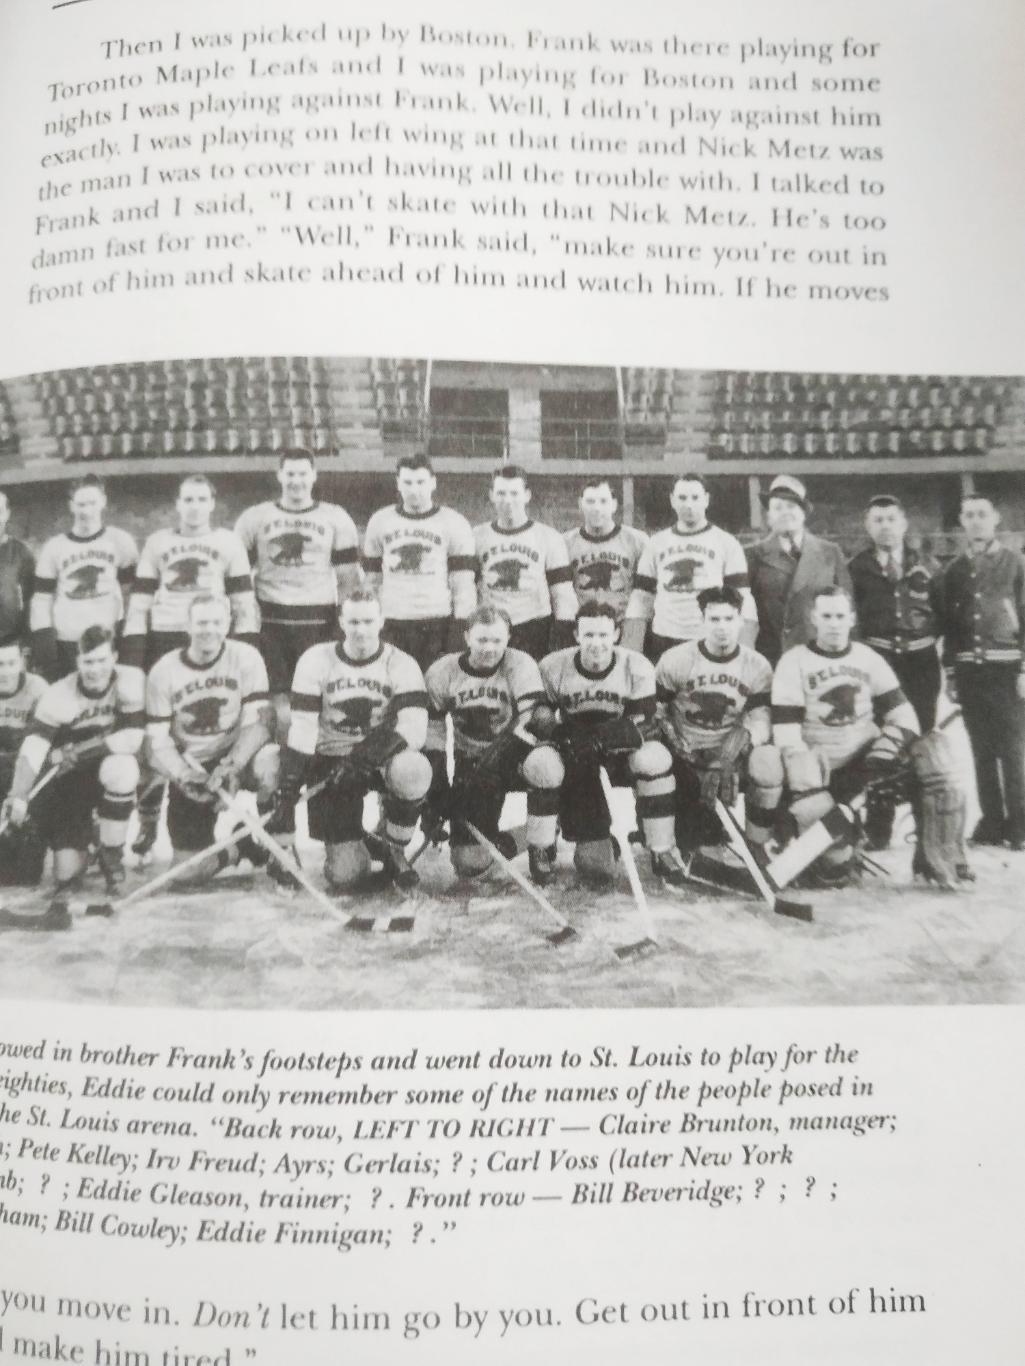 ХОККЕЙ КНИГА НХЛ 1992 OLD SCORES NEW GOAL THE STORY OF THE OTTAWA SENATORS 3